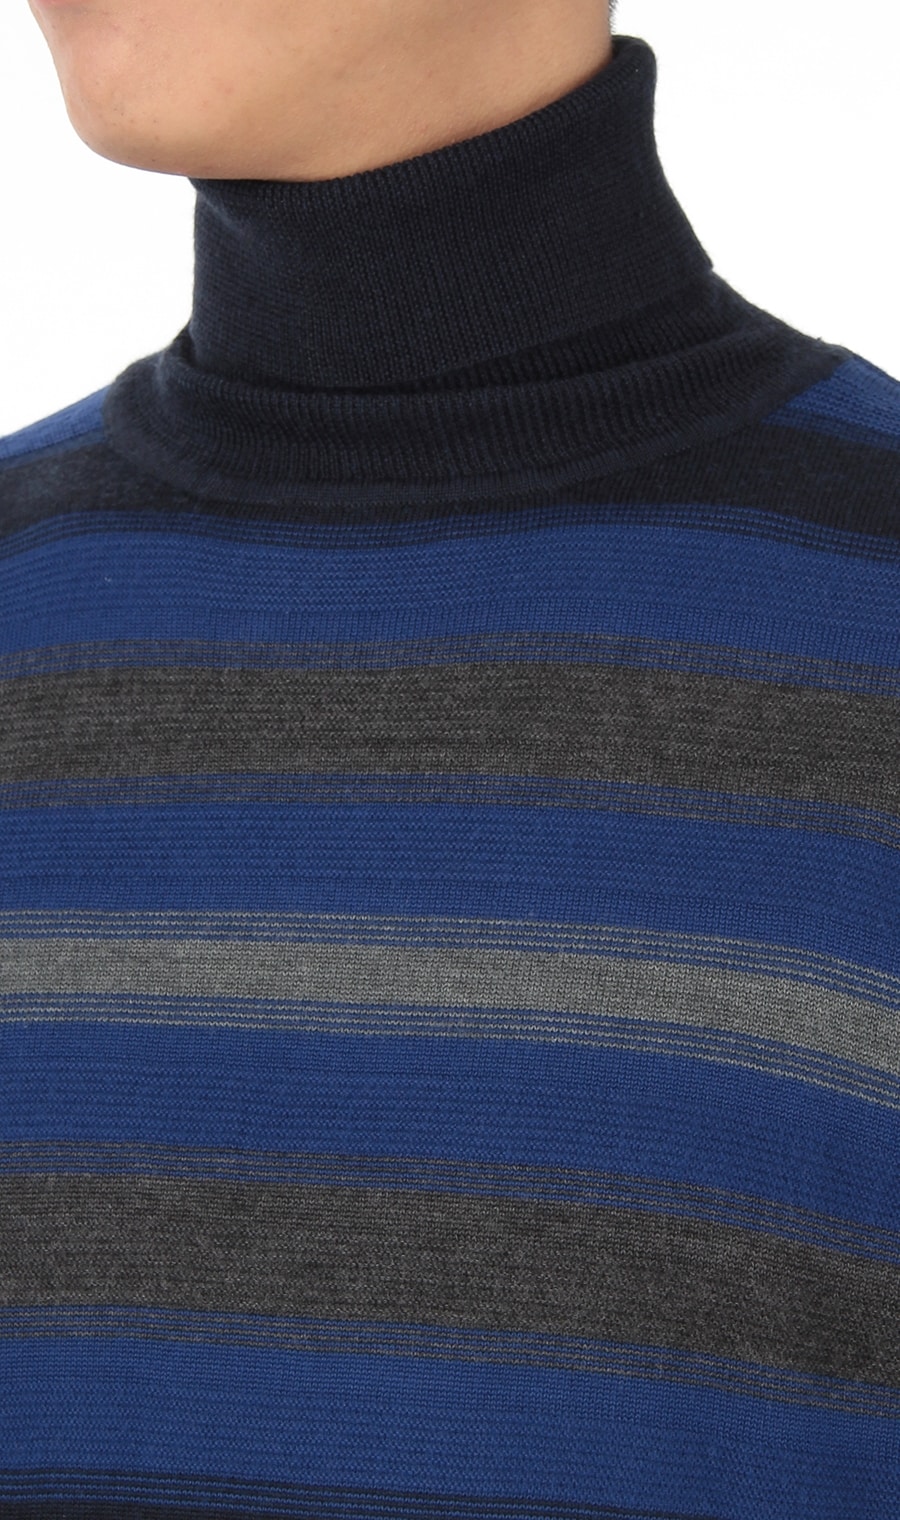 Biella Yarn使用》《グラデーション》タートルネックセーター ...